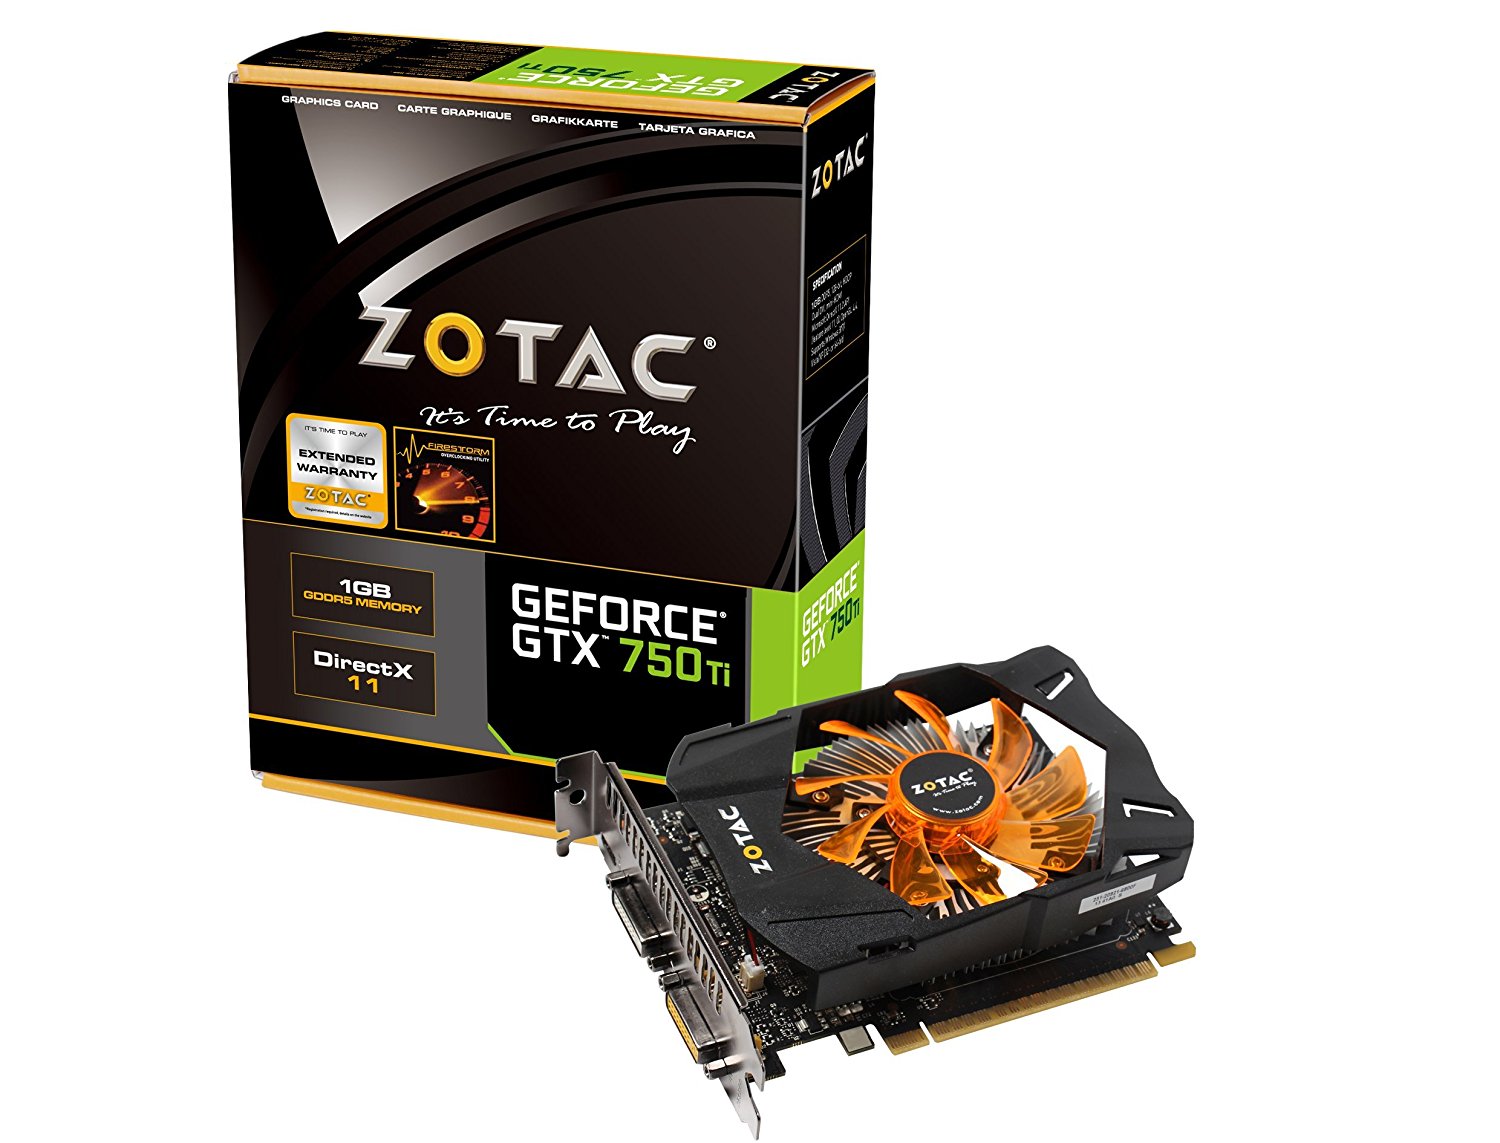 ZOTAC NVIDIA GeForce GTX 750 Ti 1GB GDDR5 2DVI/MINI HDMI VIDEO CARD (ZT-70603-10M)